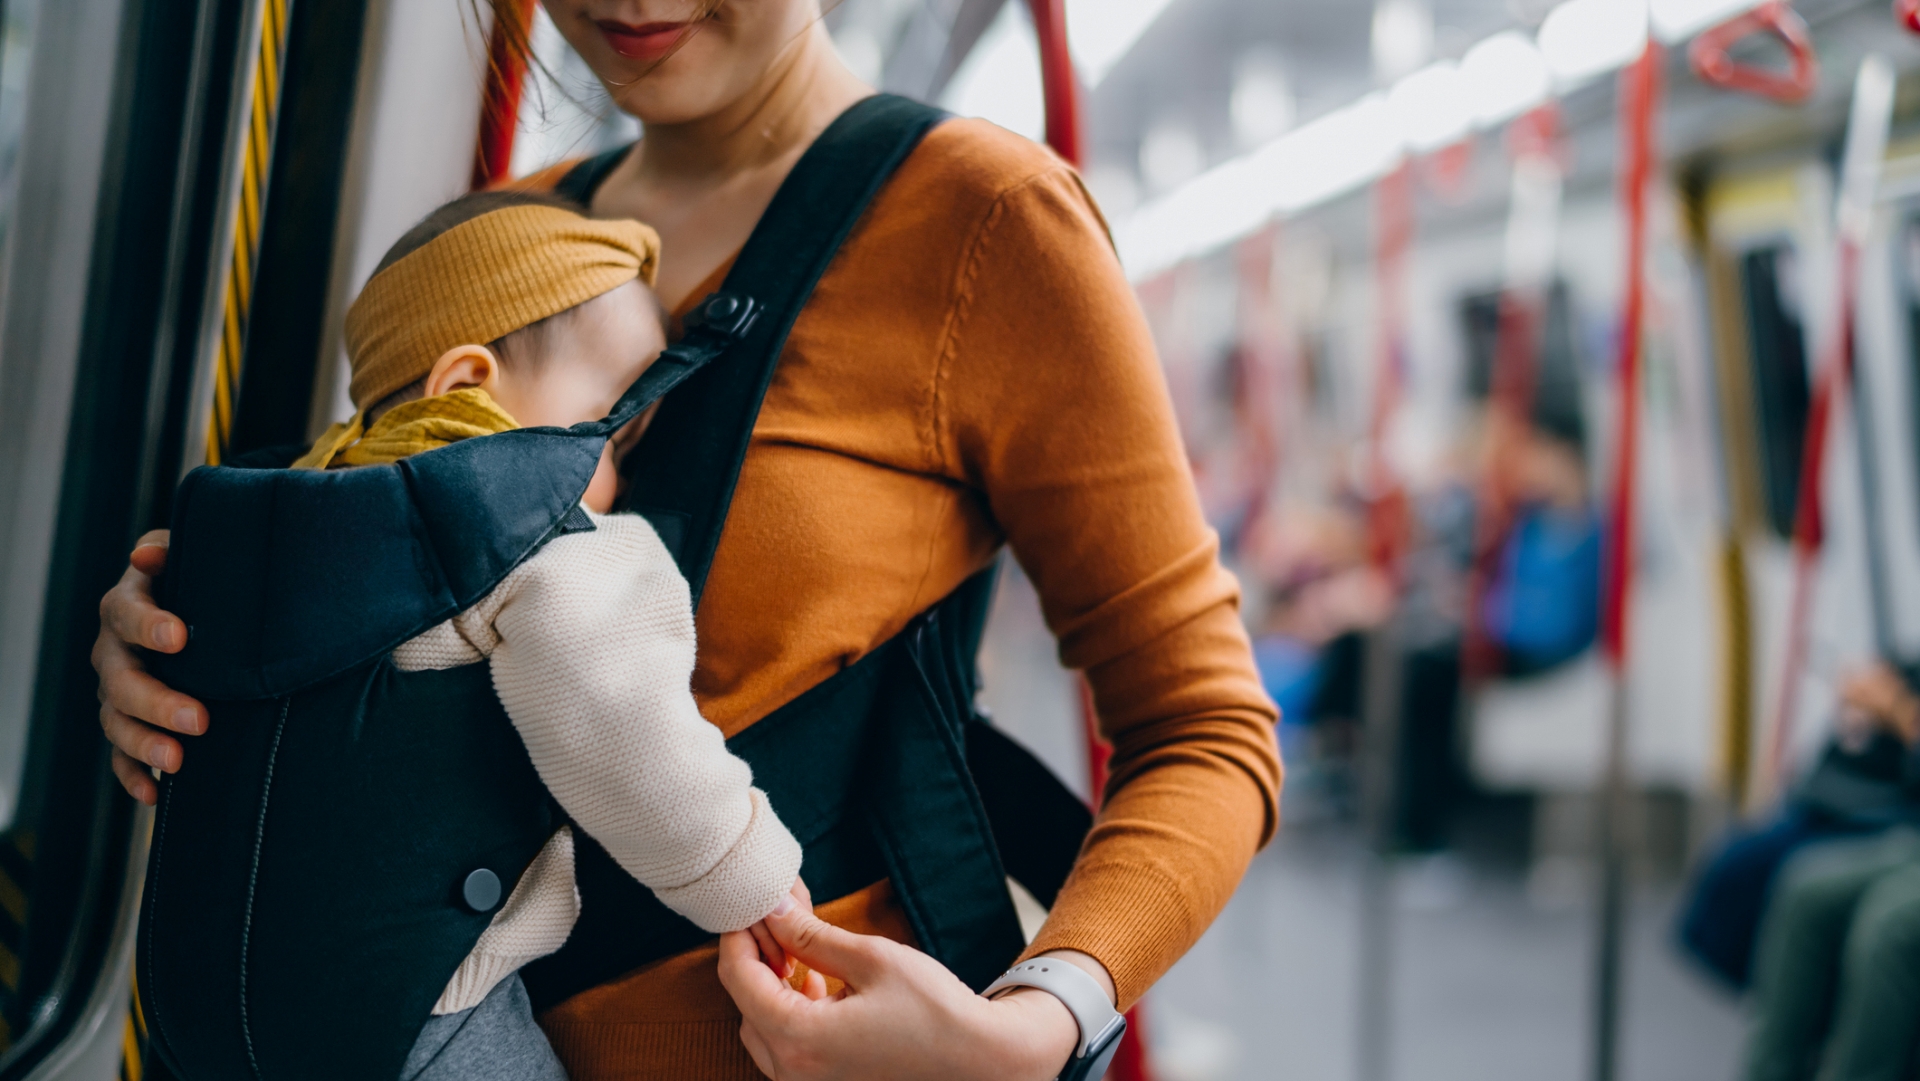 Utazás metrón babával